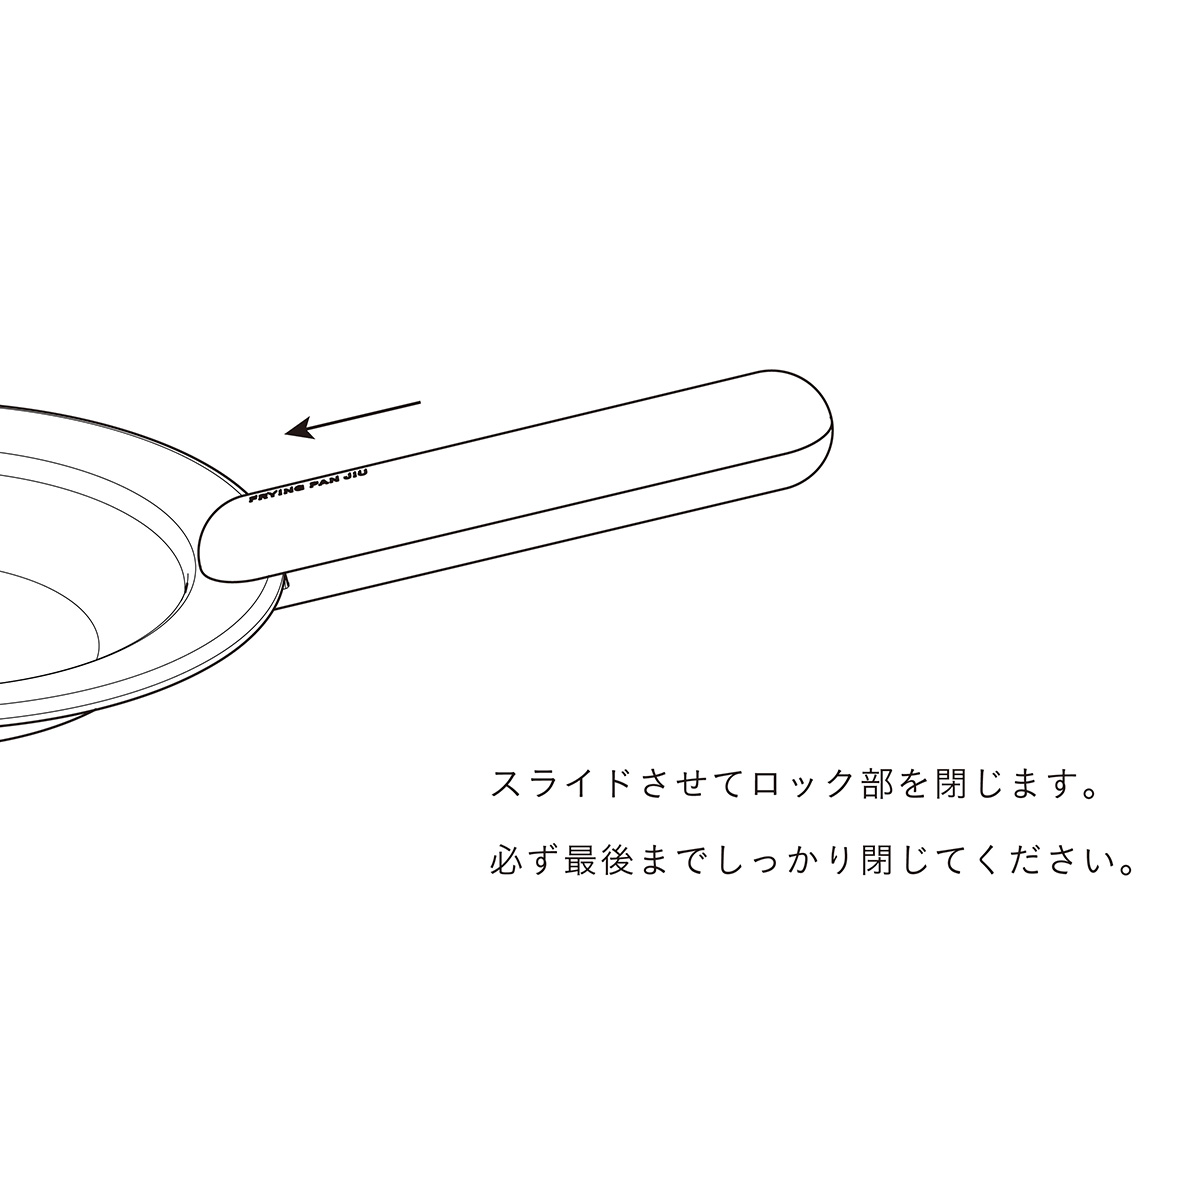 【FRYING PAN JIU】取っ手 単品 ブナ